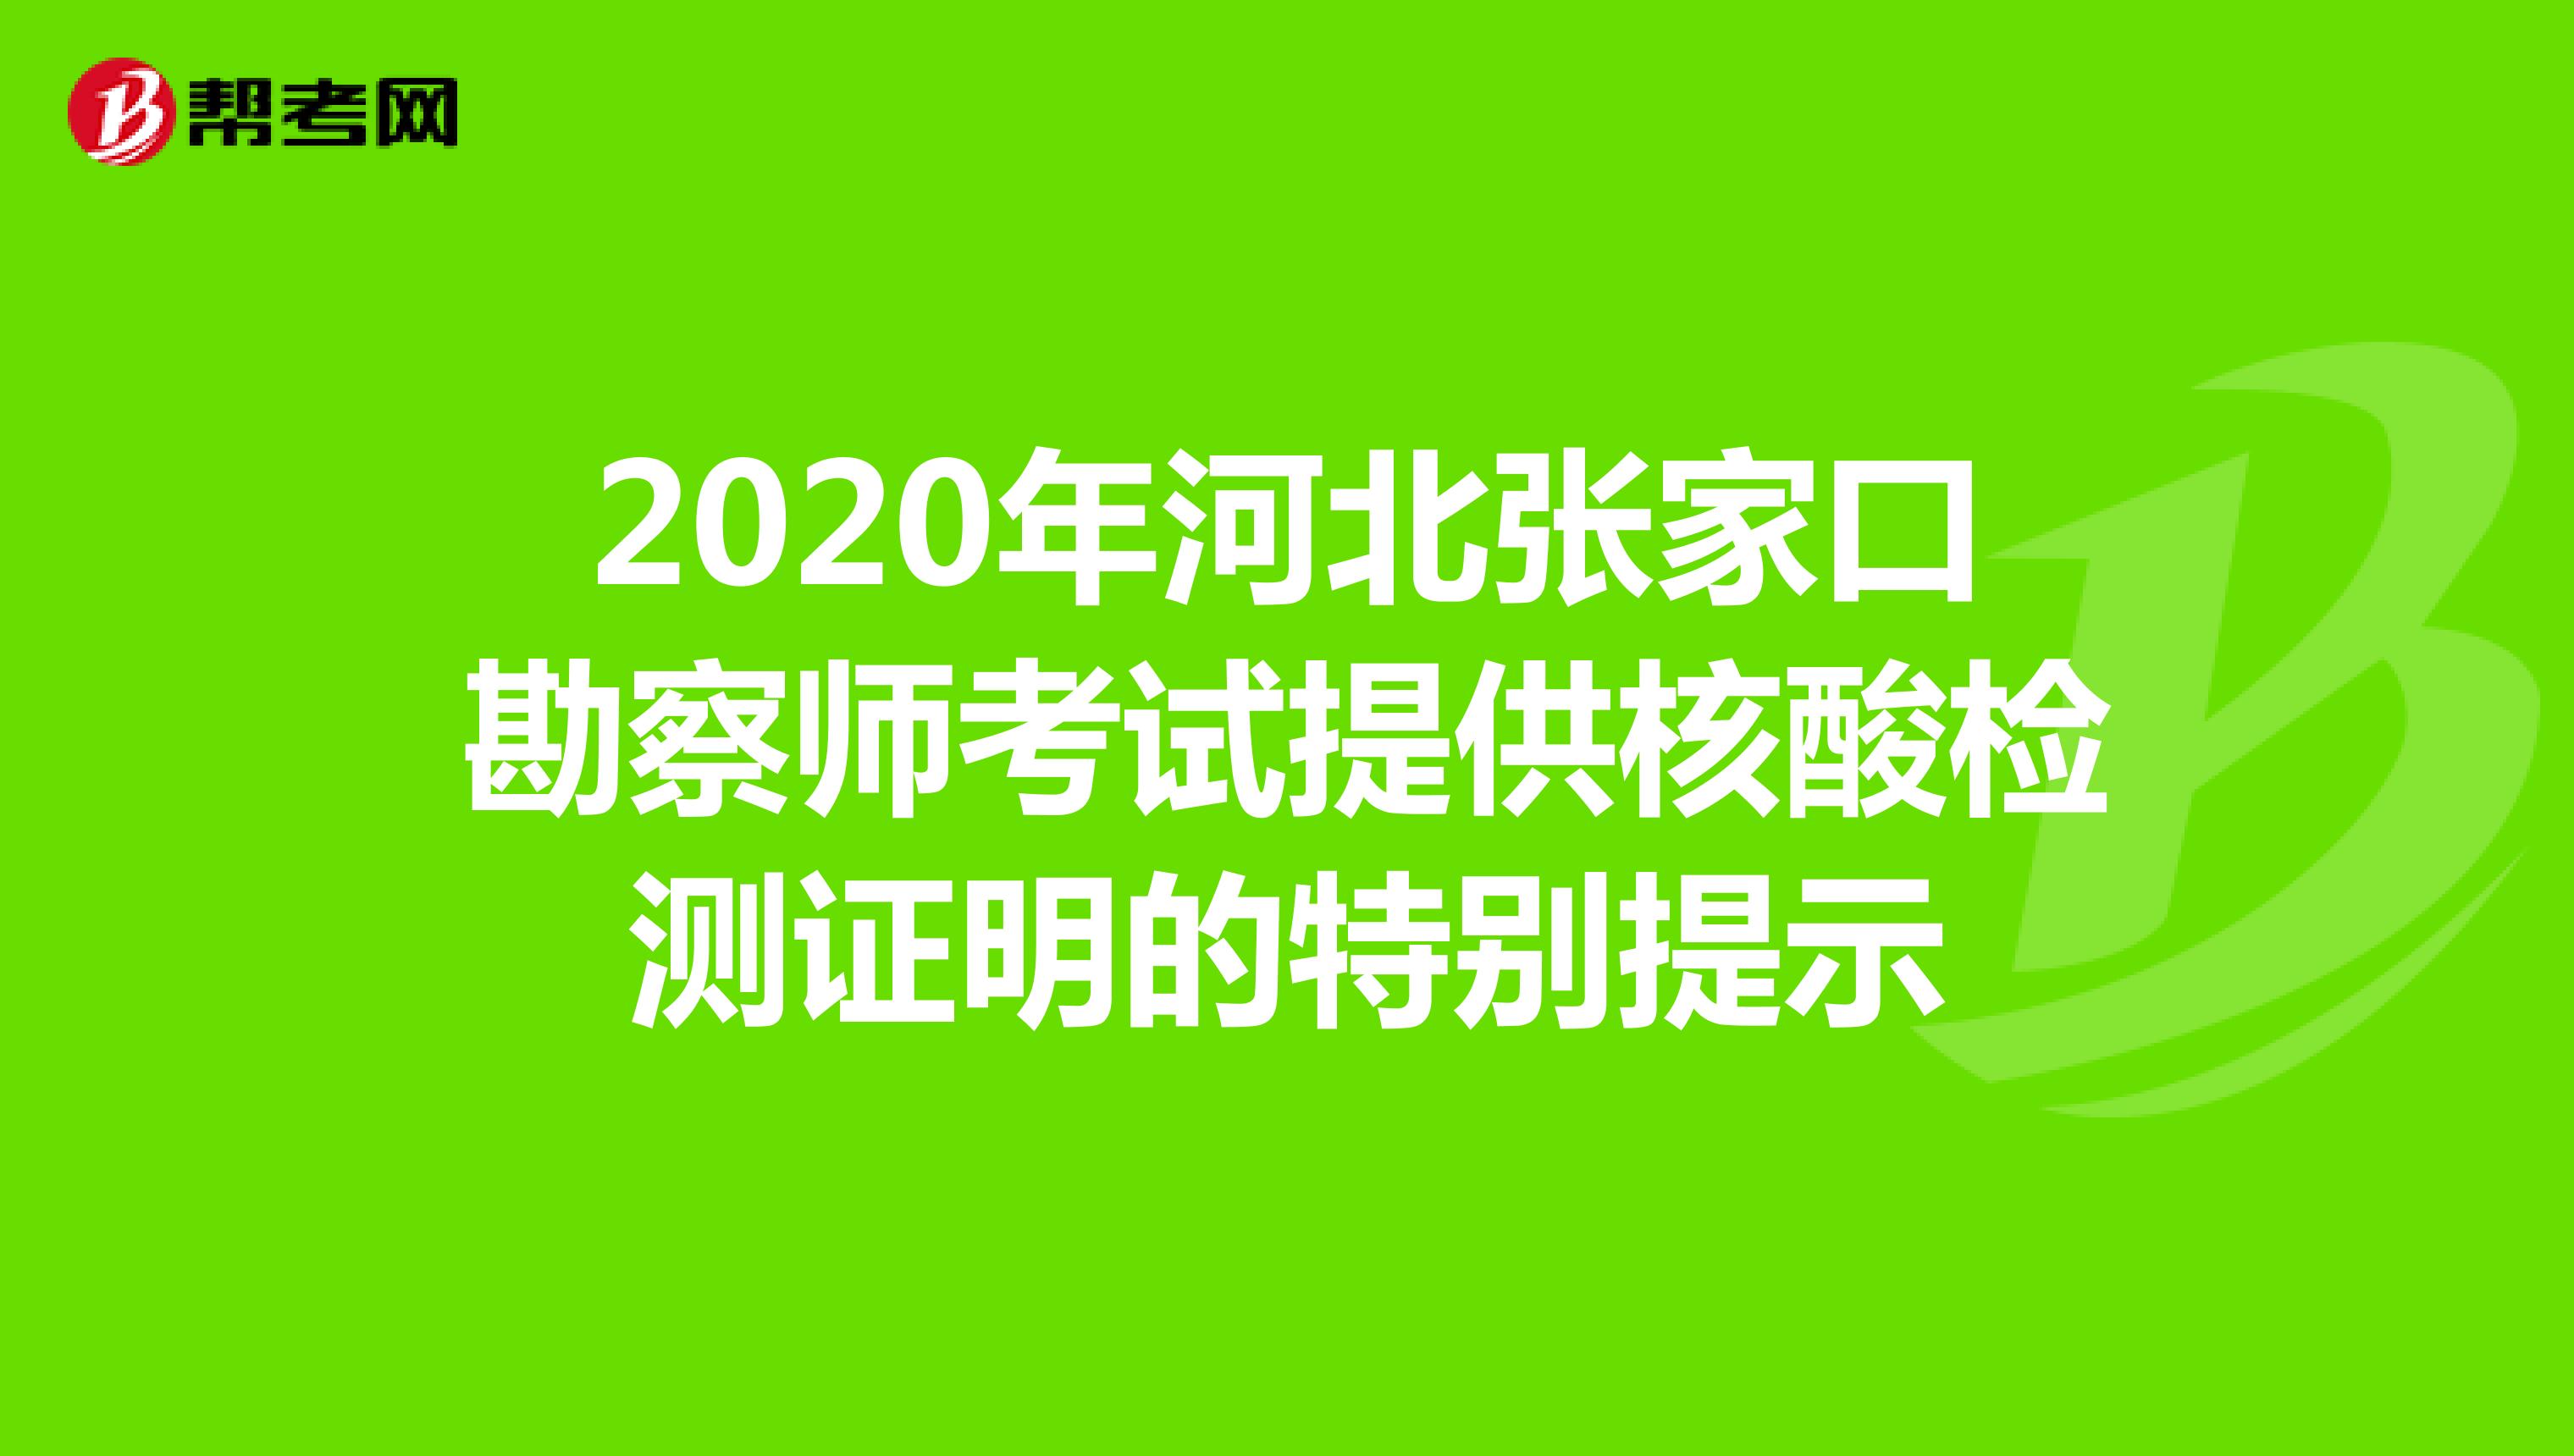 2020年河北张家口勘察师考试提供核酸检测证明的特别提示